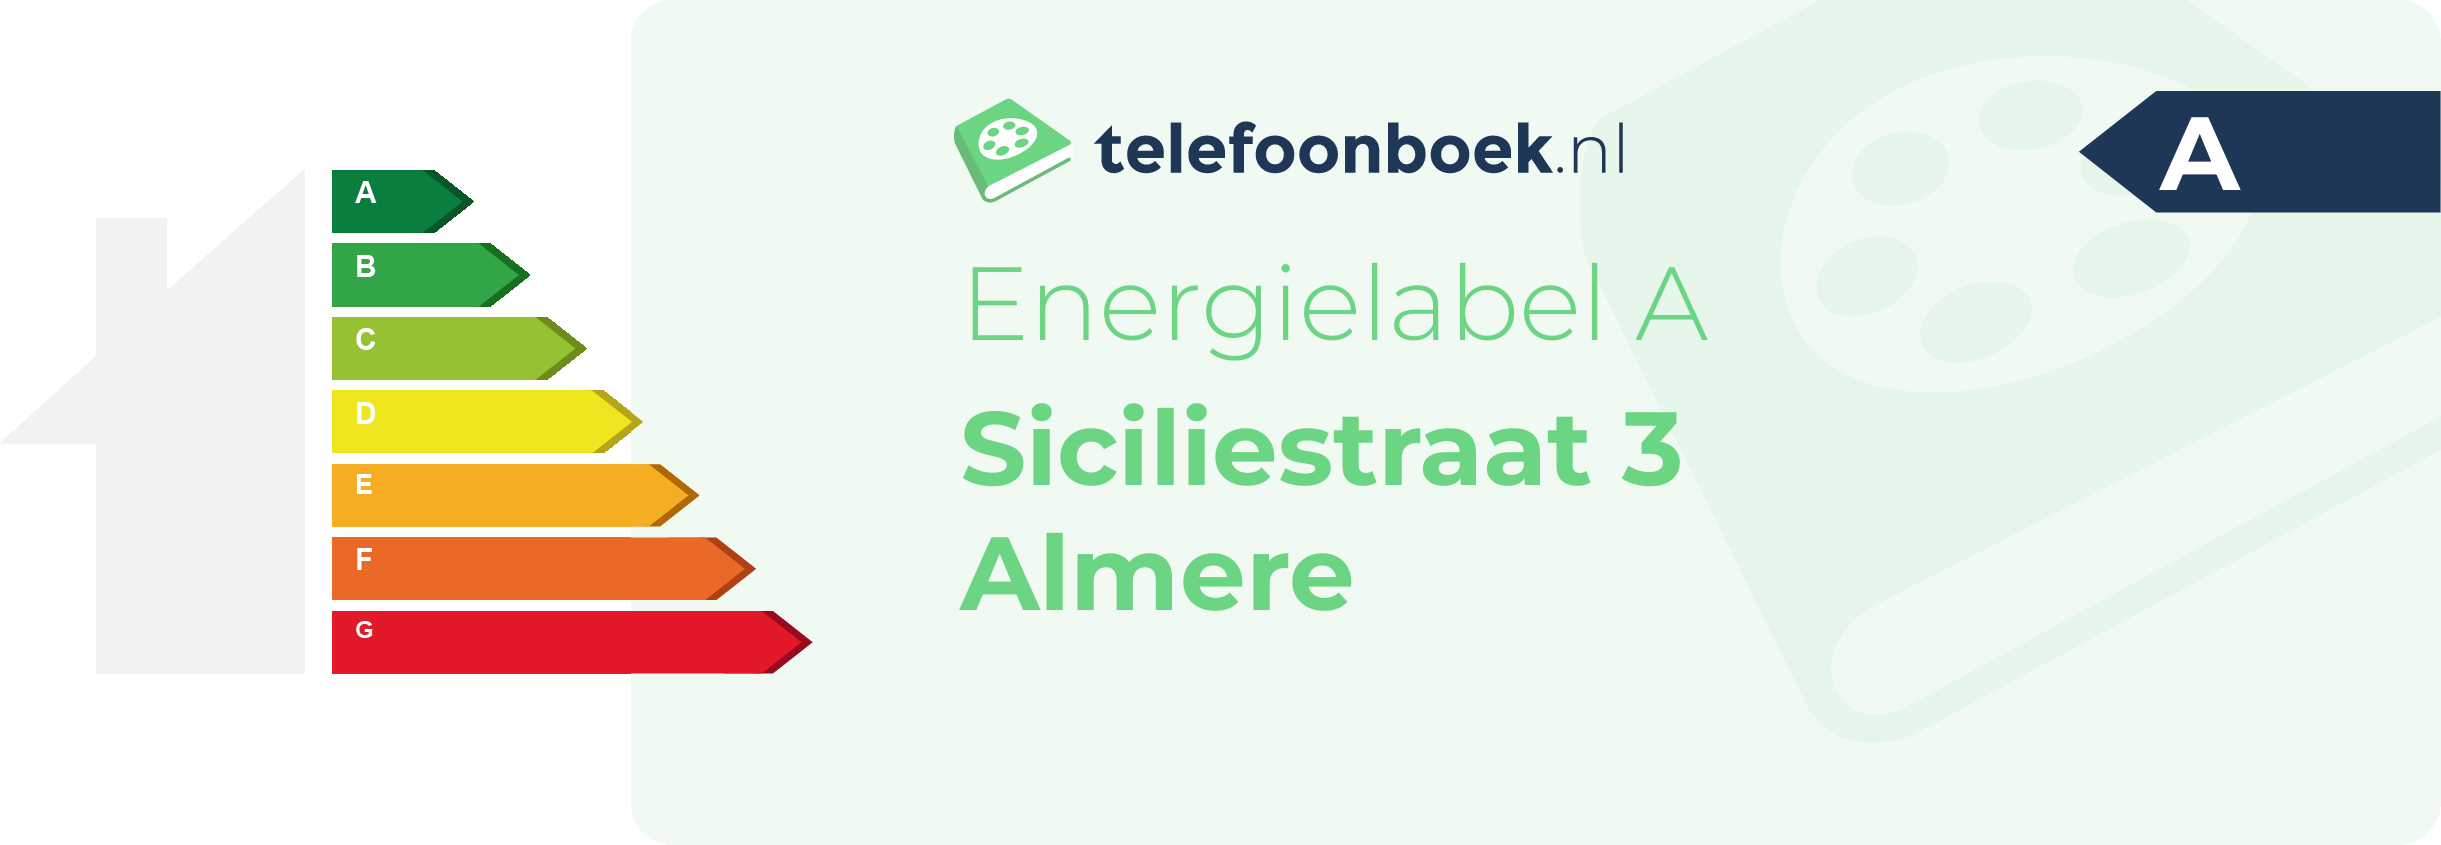 Energielabel Siciliestraat 3 Almere